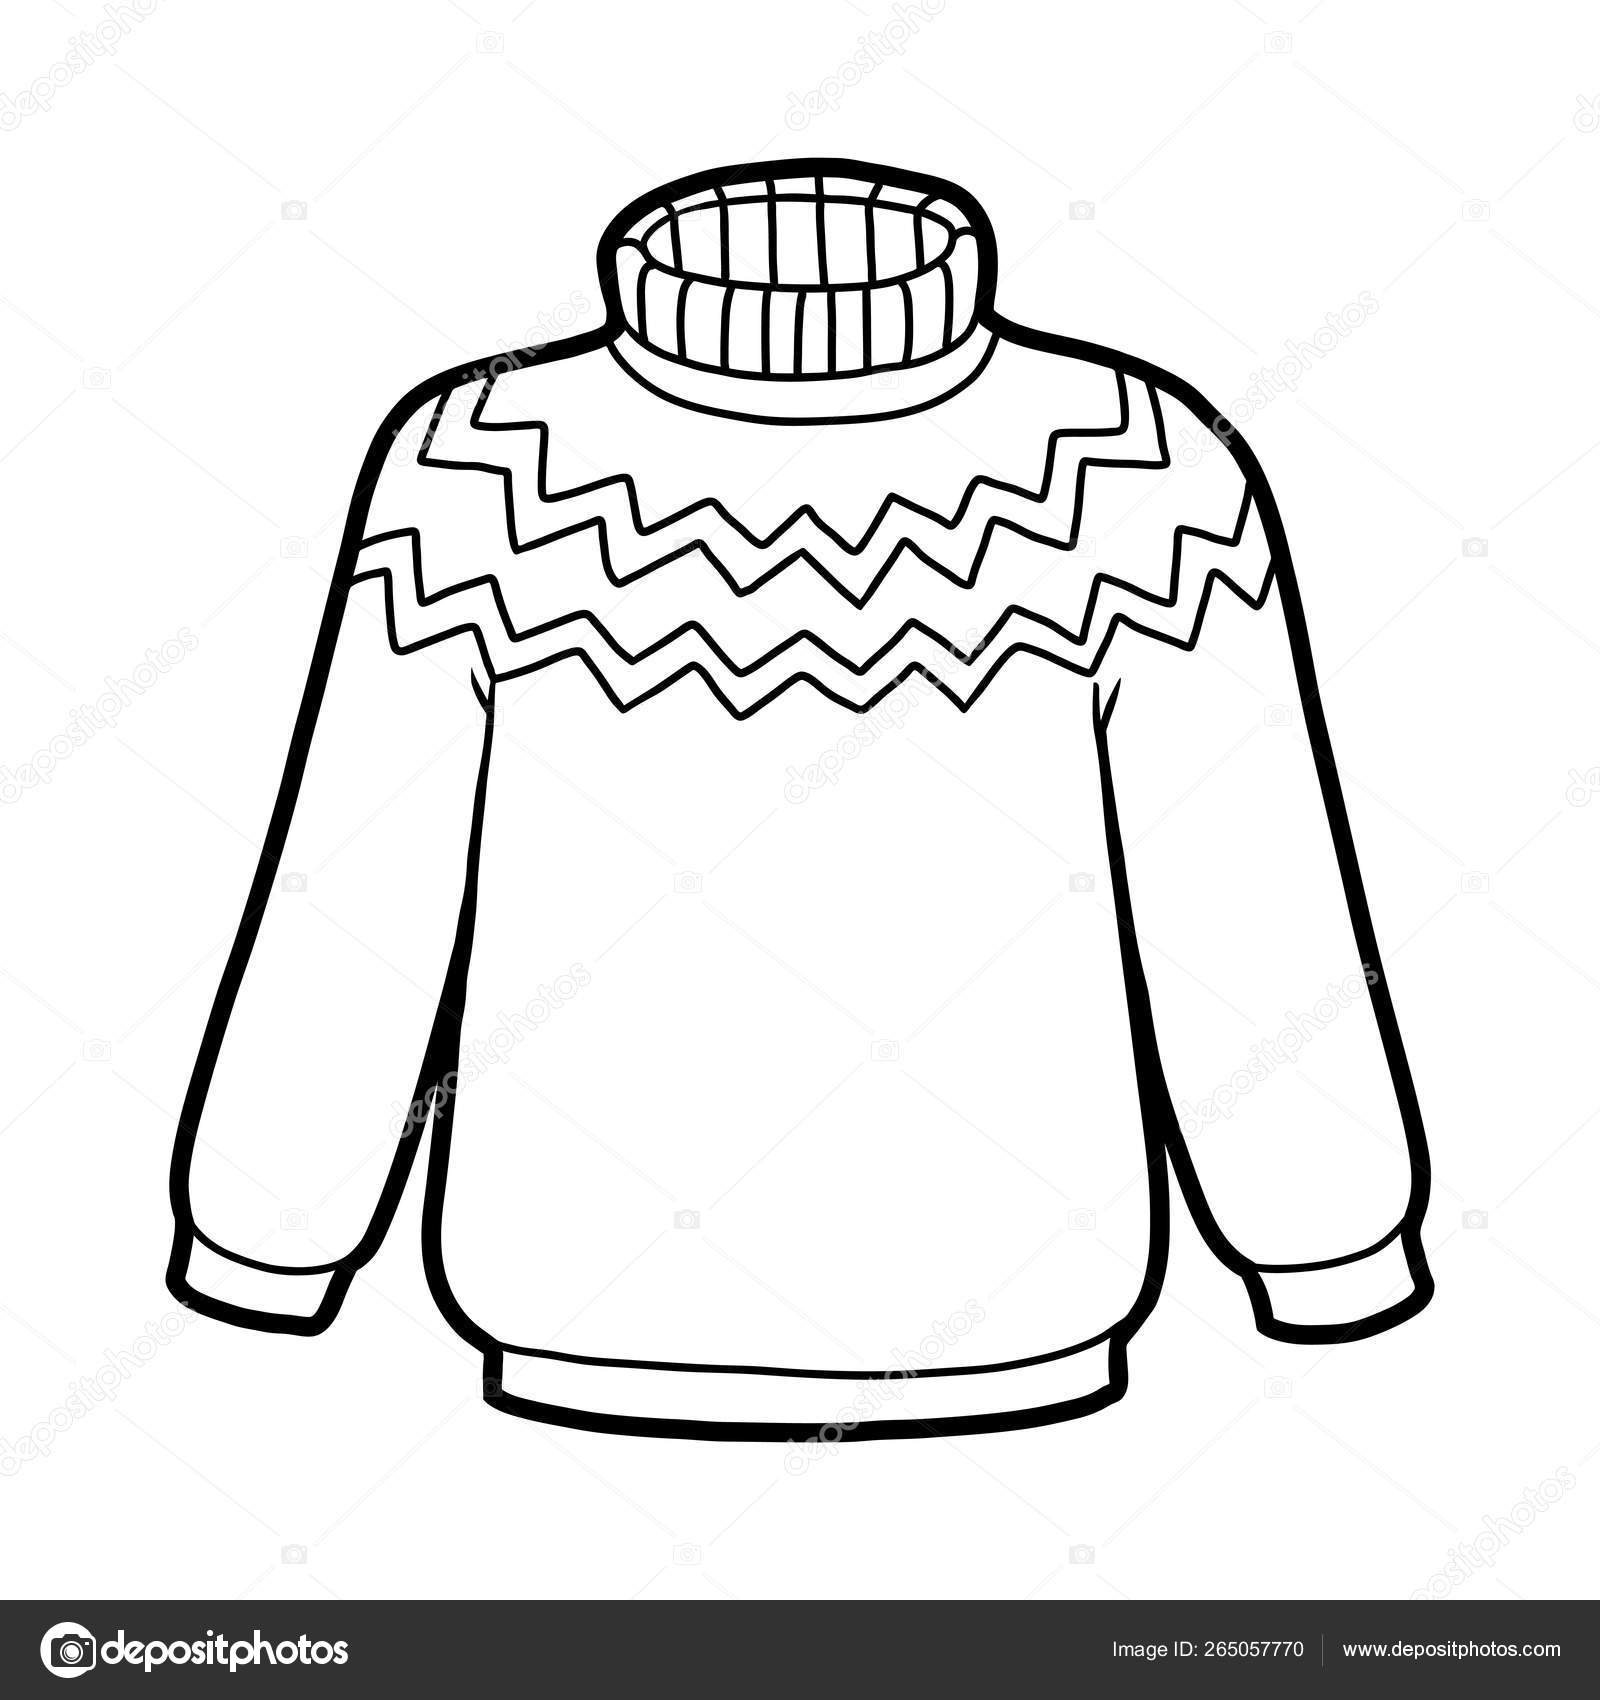 printable-sweater-outline-printable-world-holiday